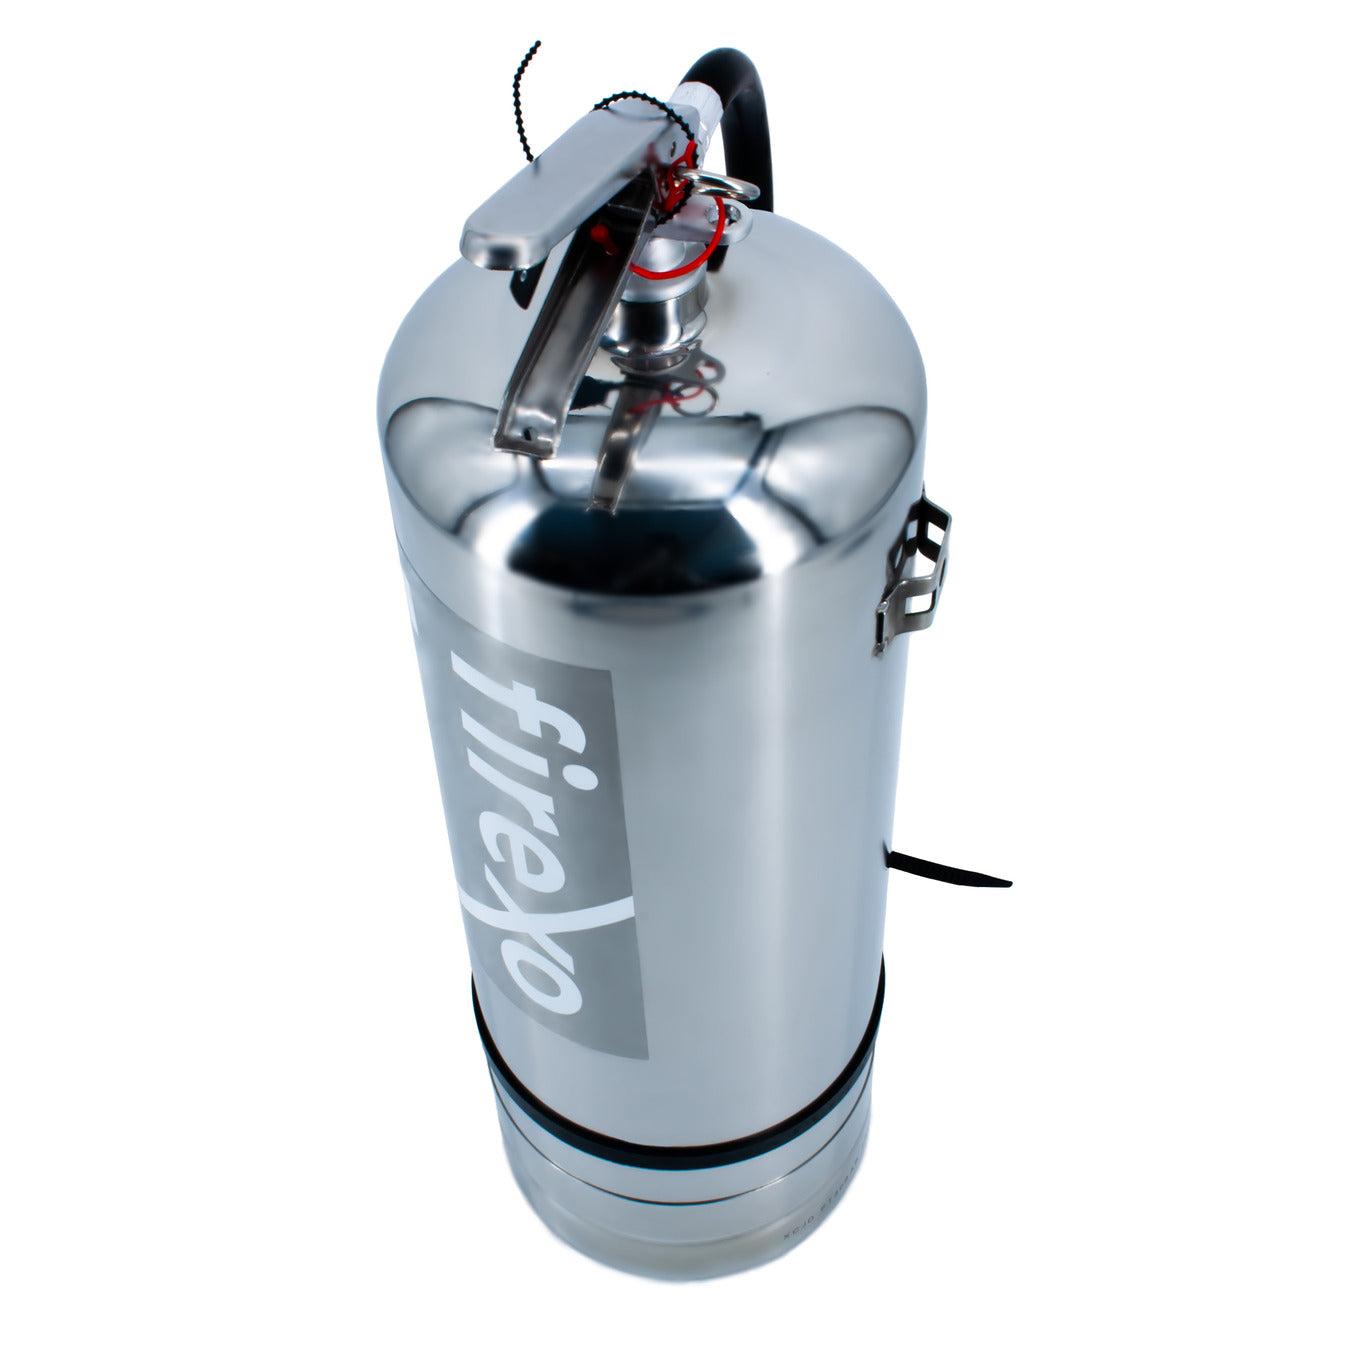 Firexo 9-litrowa gaśnica ze stali nierdzewnej 